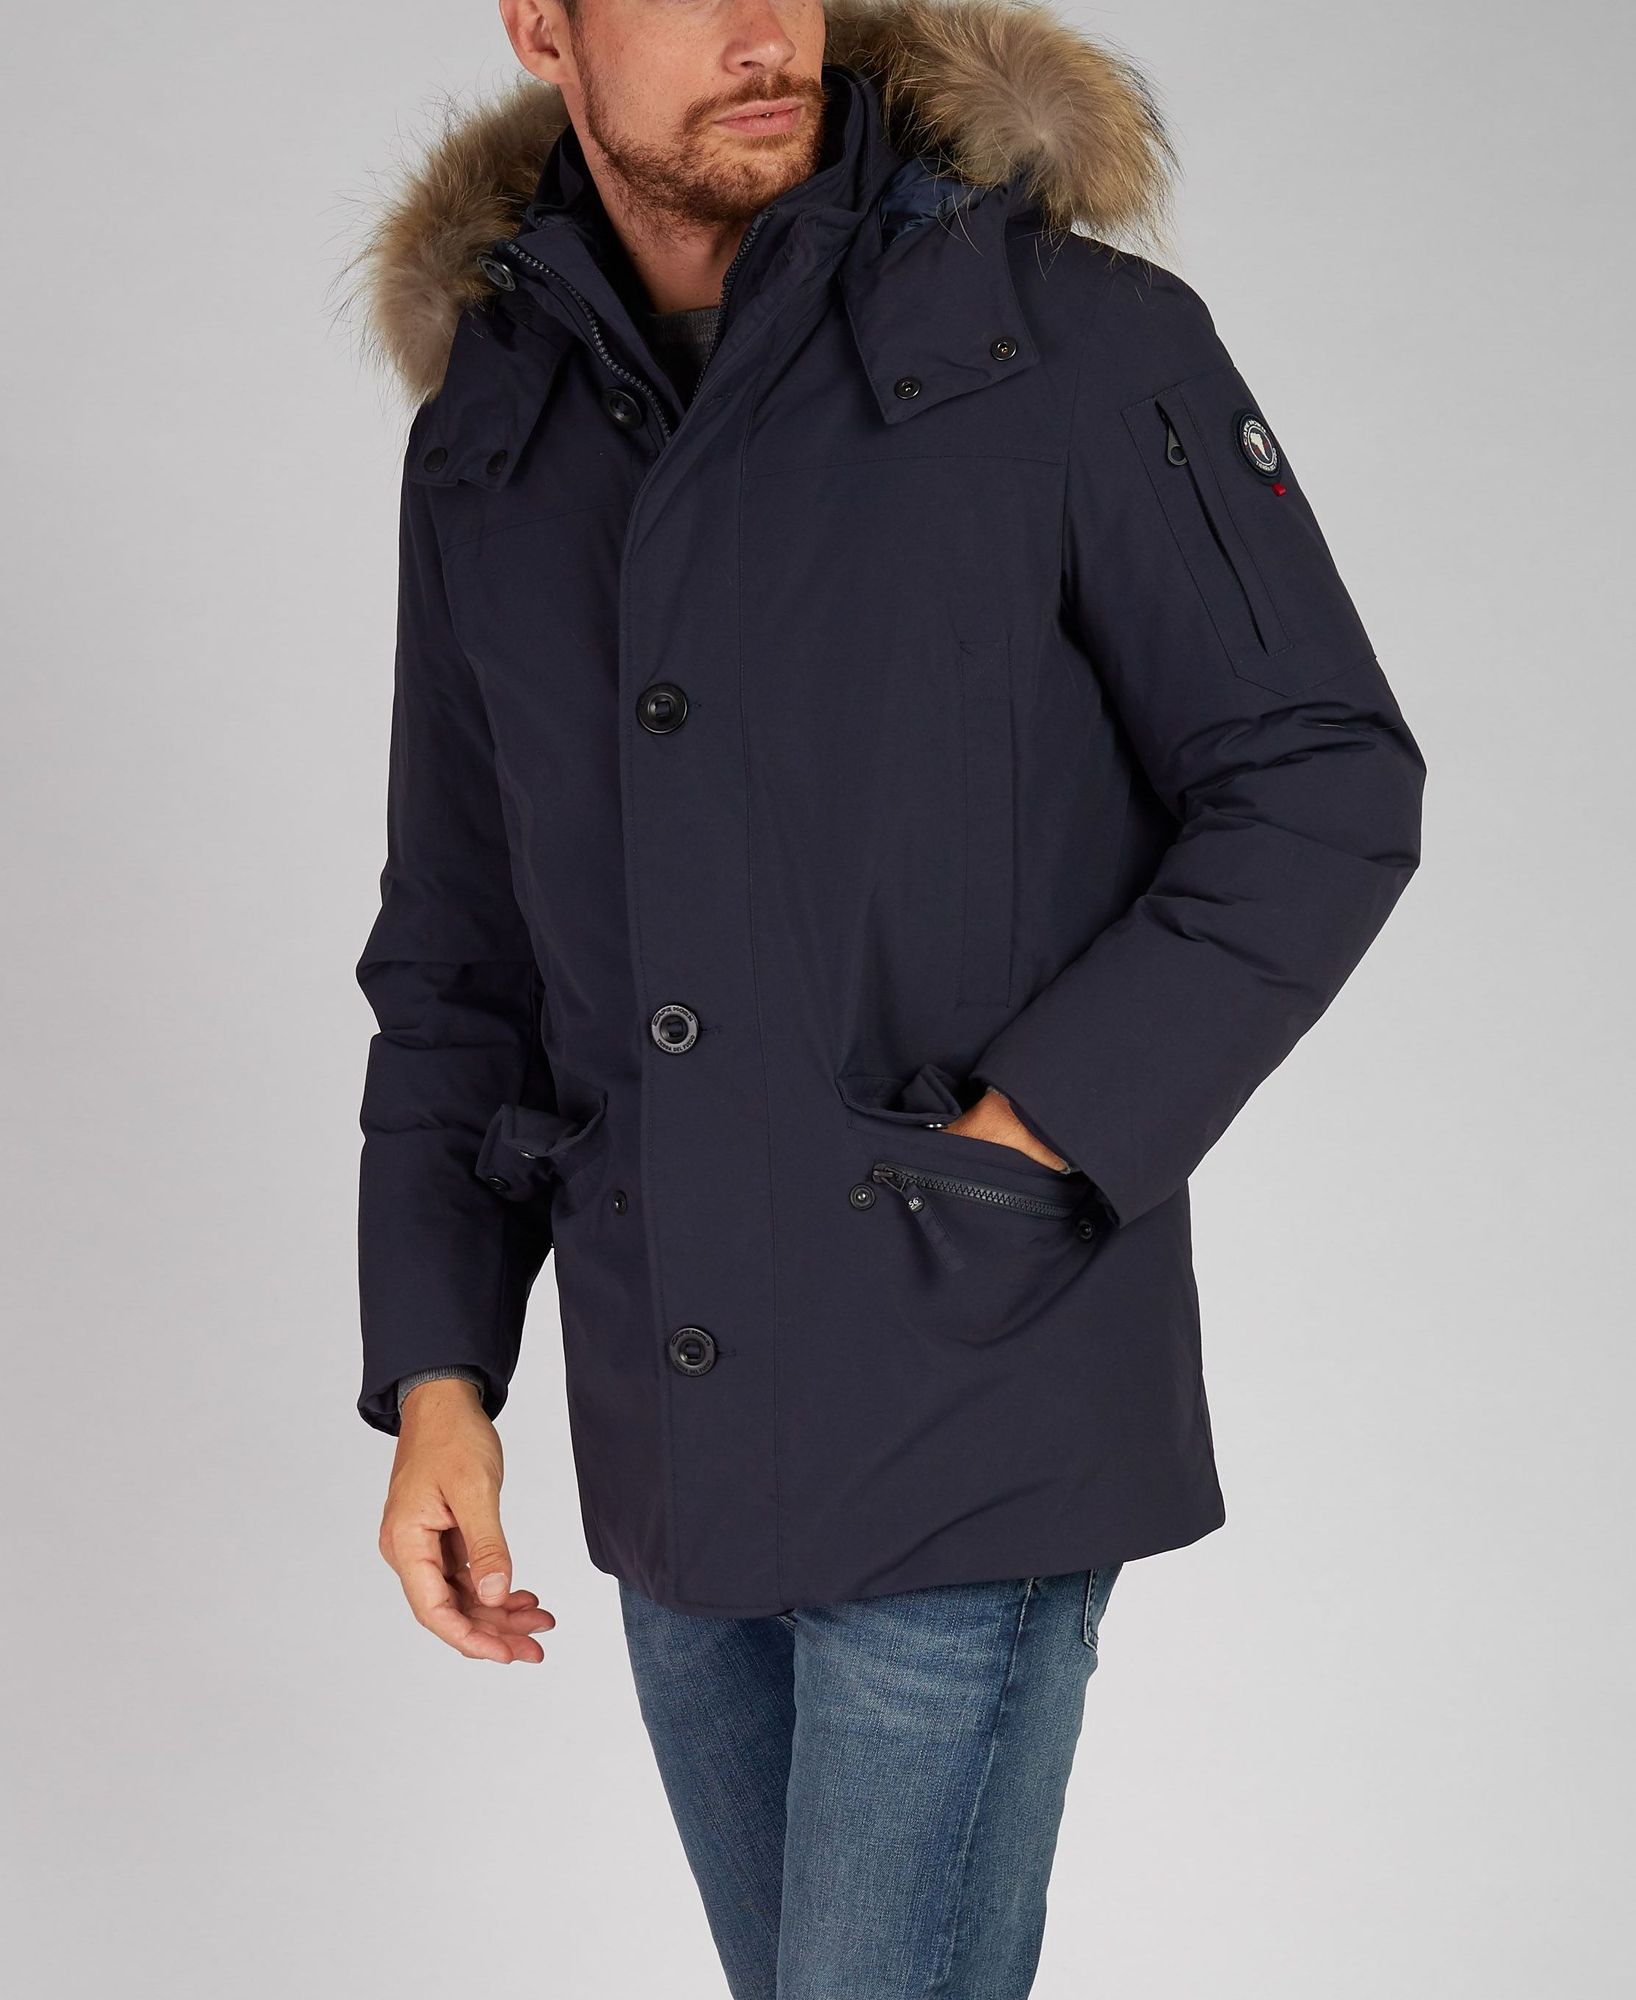 samsøe samsøe beaufort jacket 3955